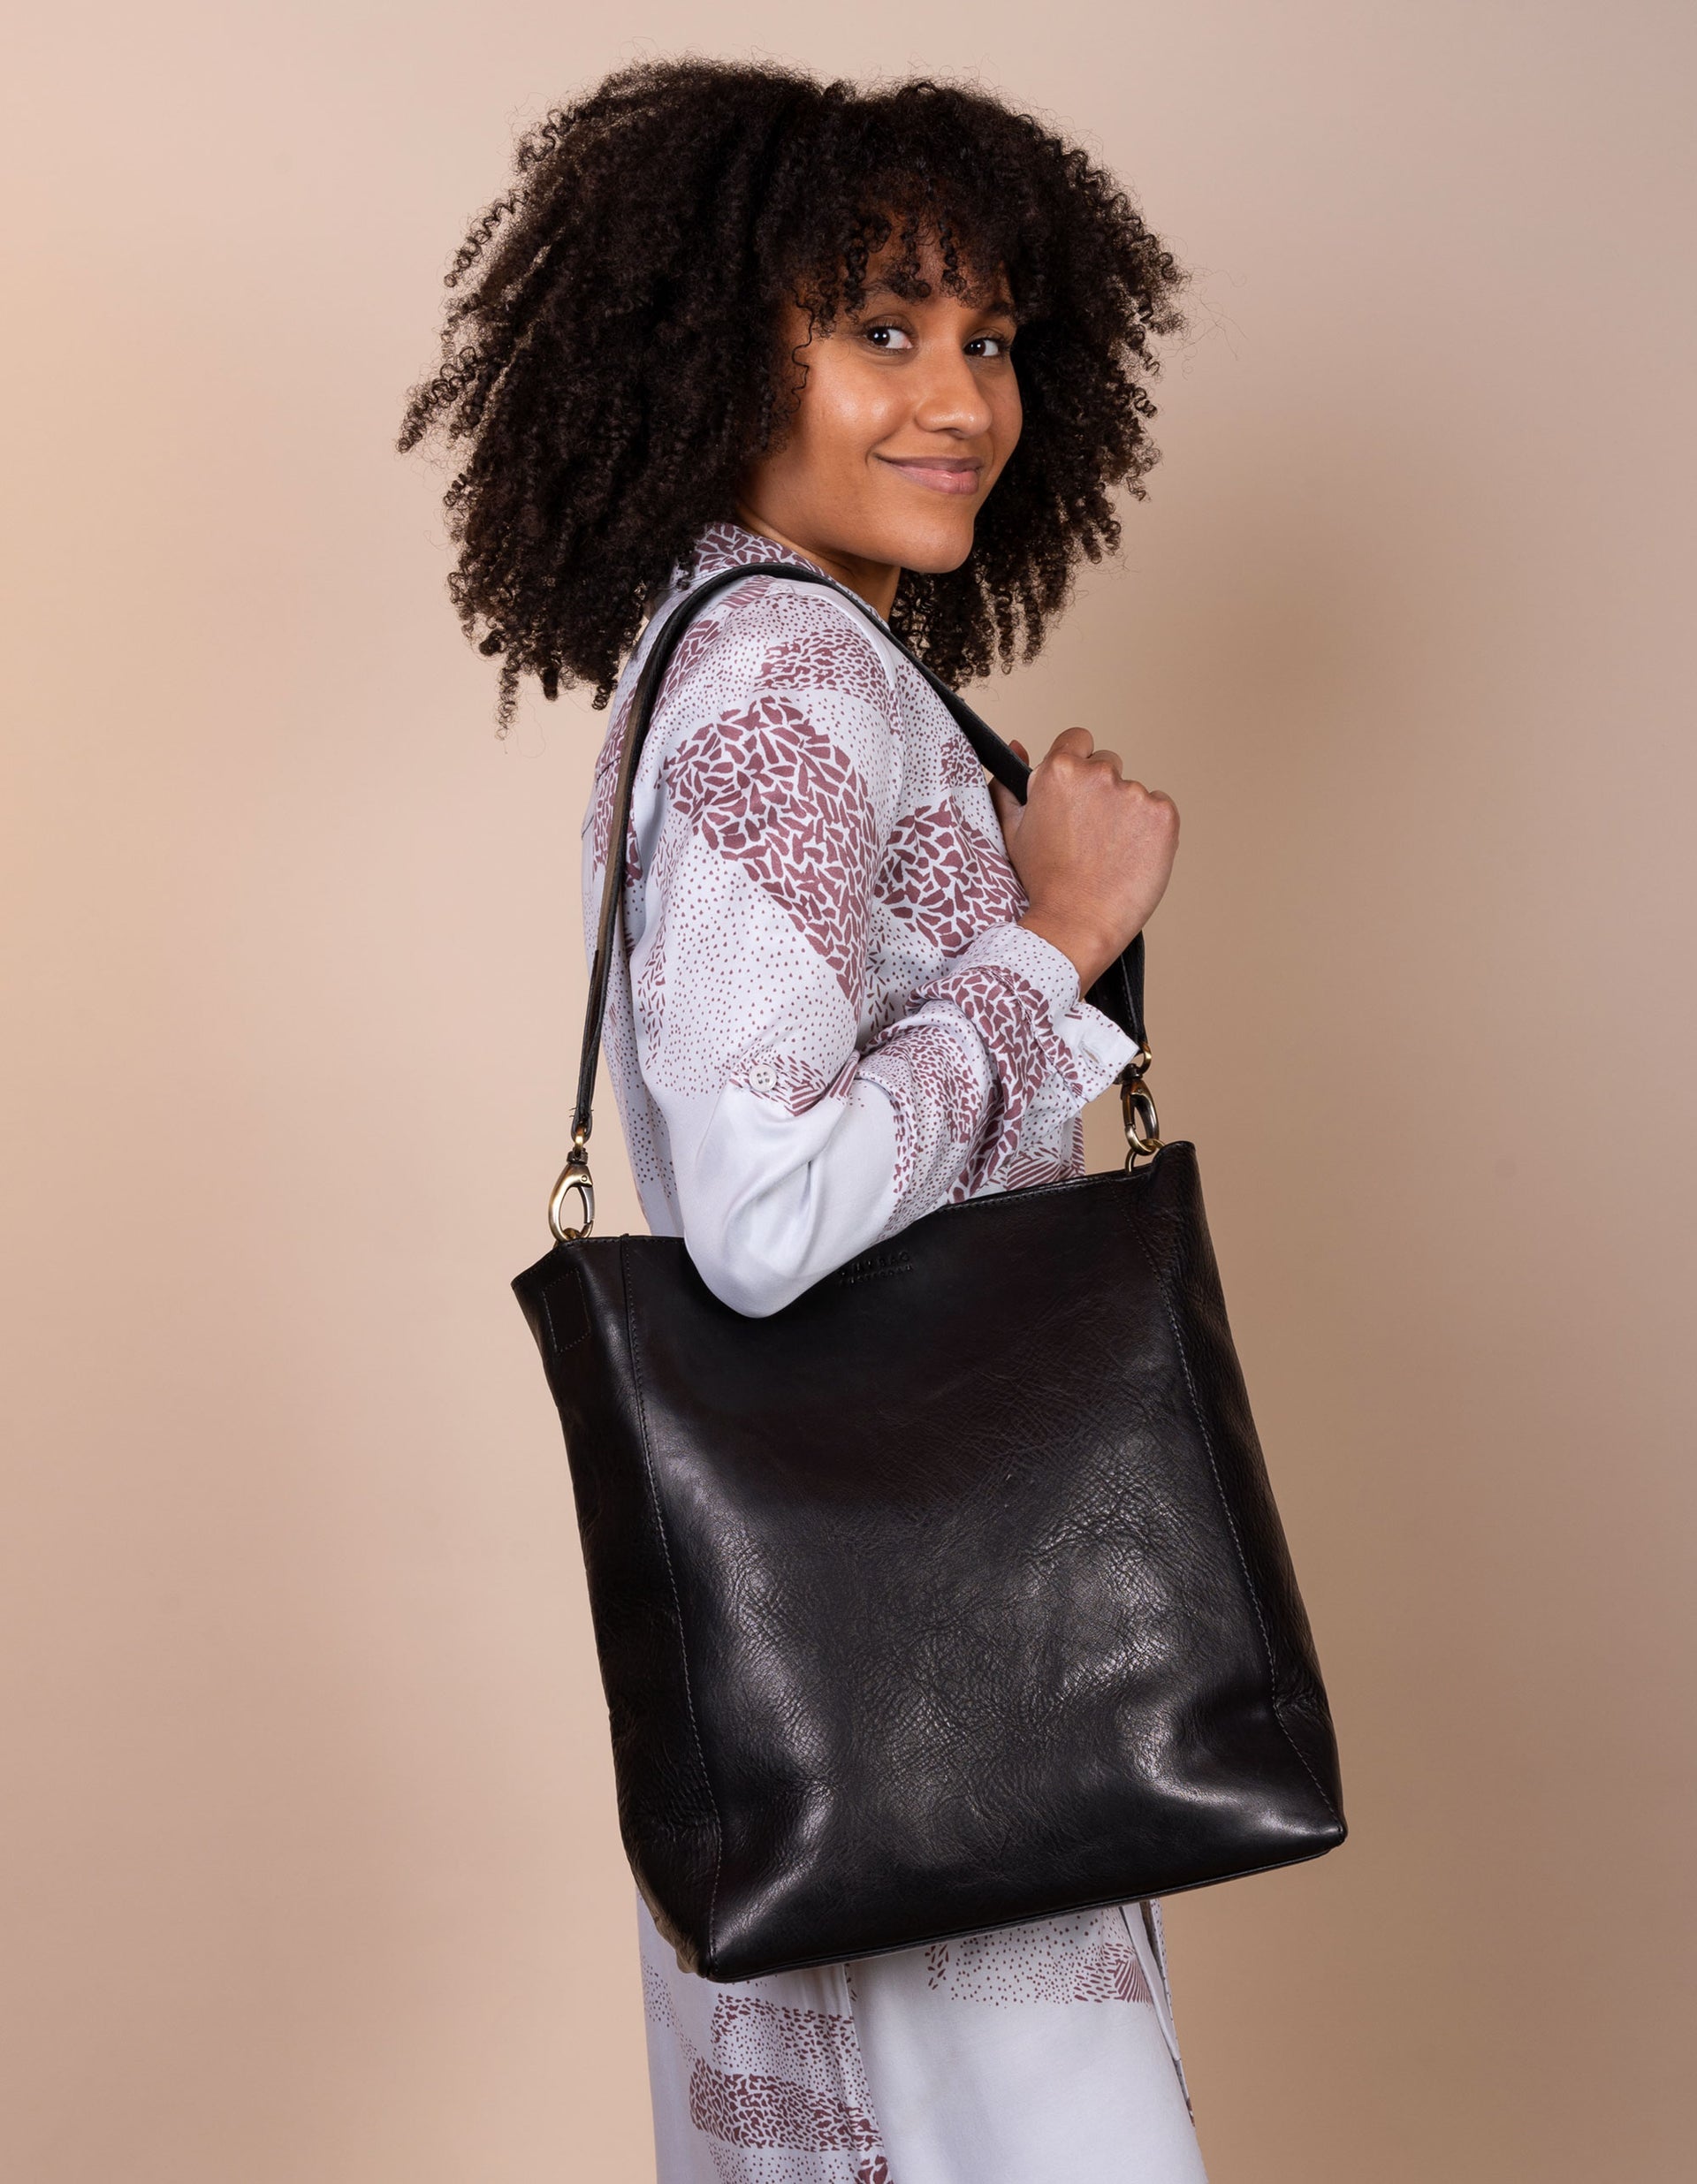 Sofia Black Leather Stromboli Leather - Short strap, female model image